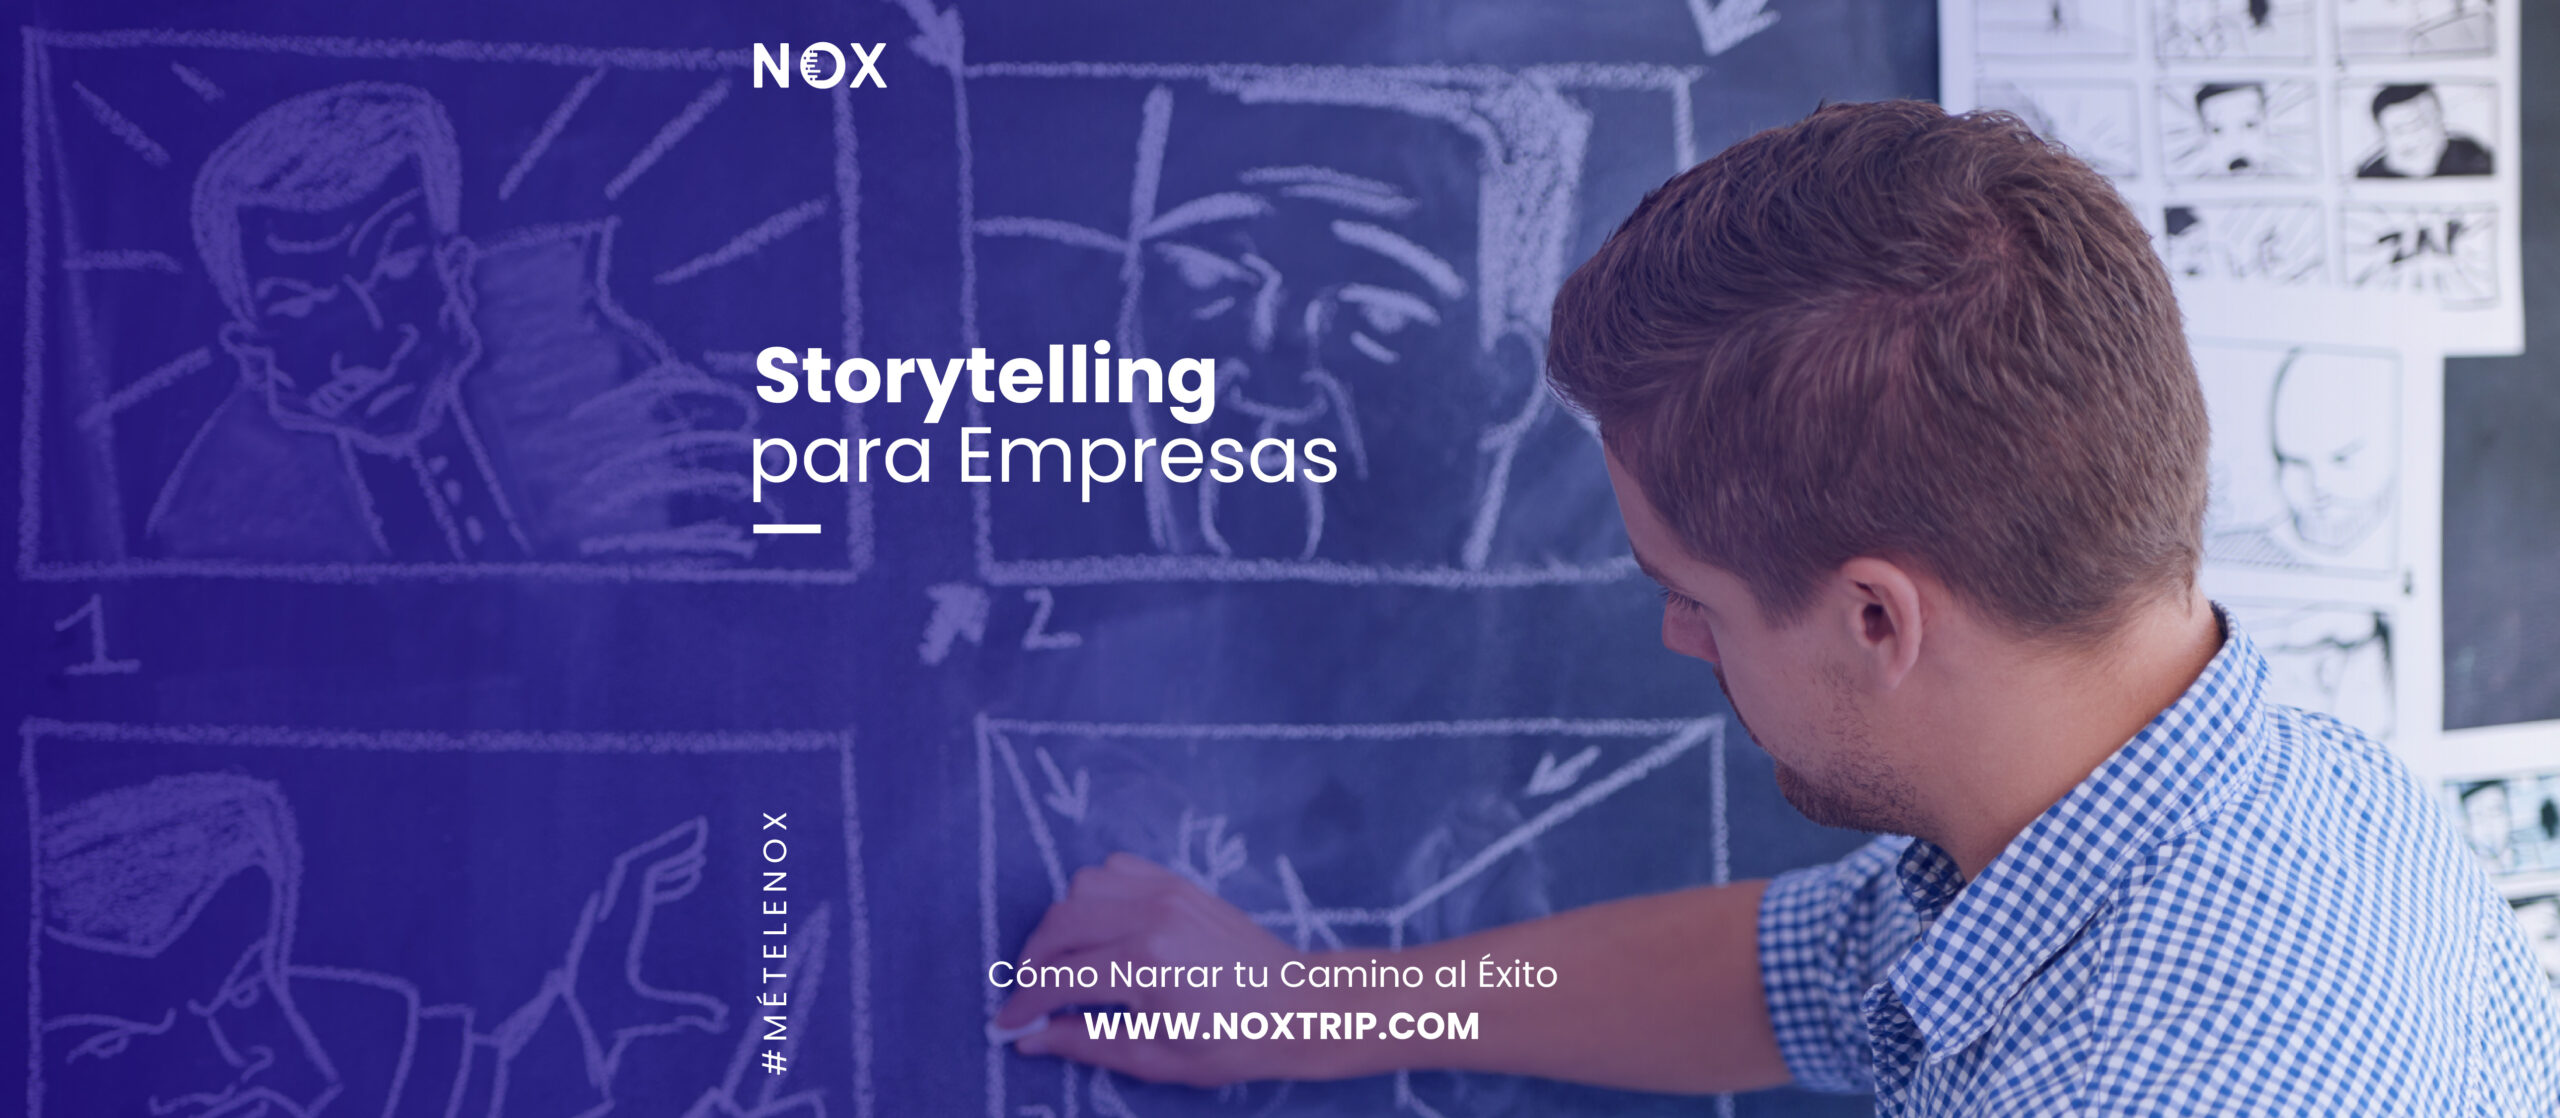 Nox marketing digital -Storytelling para Empresas Cómo Narrar tu Camino al Éxito